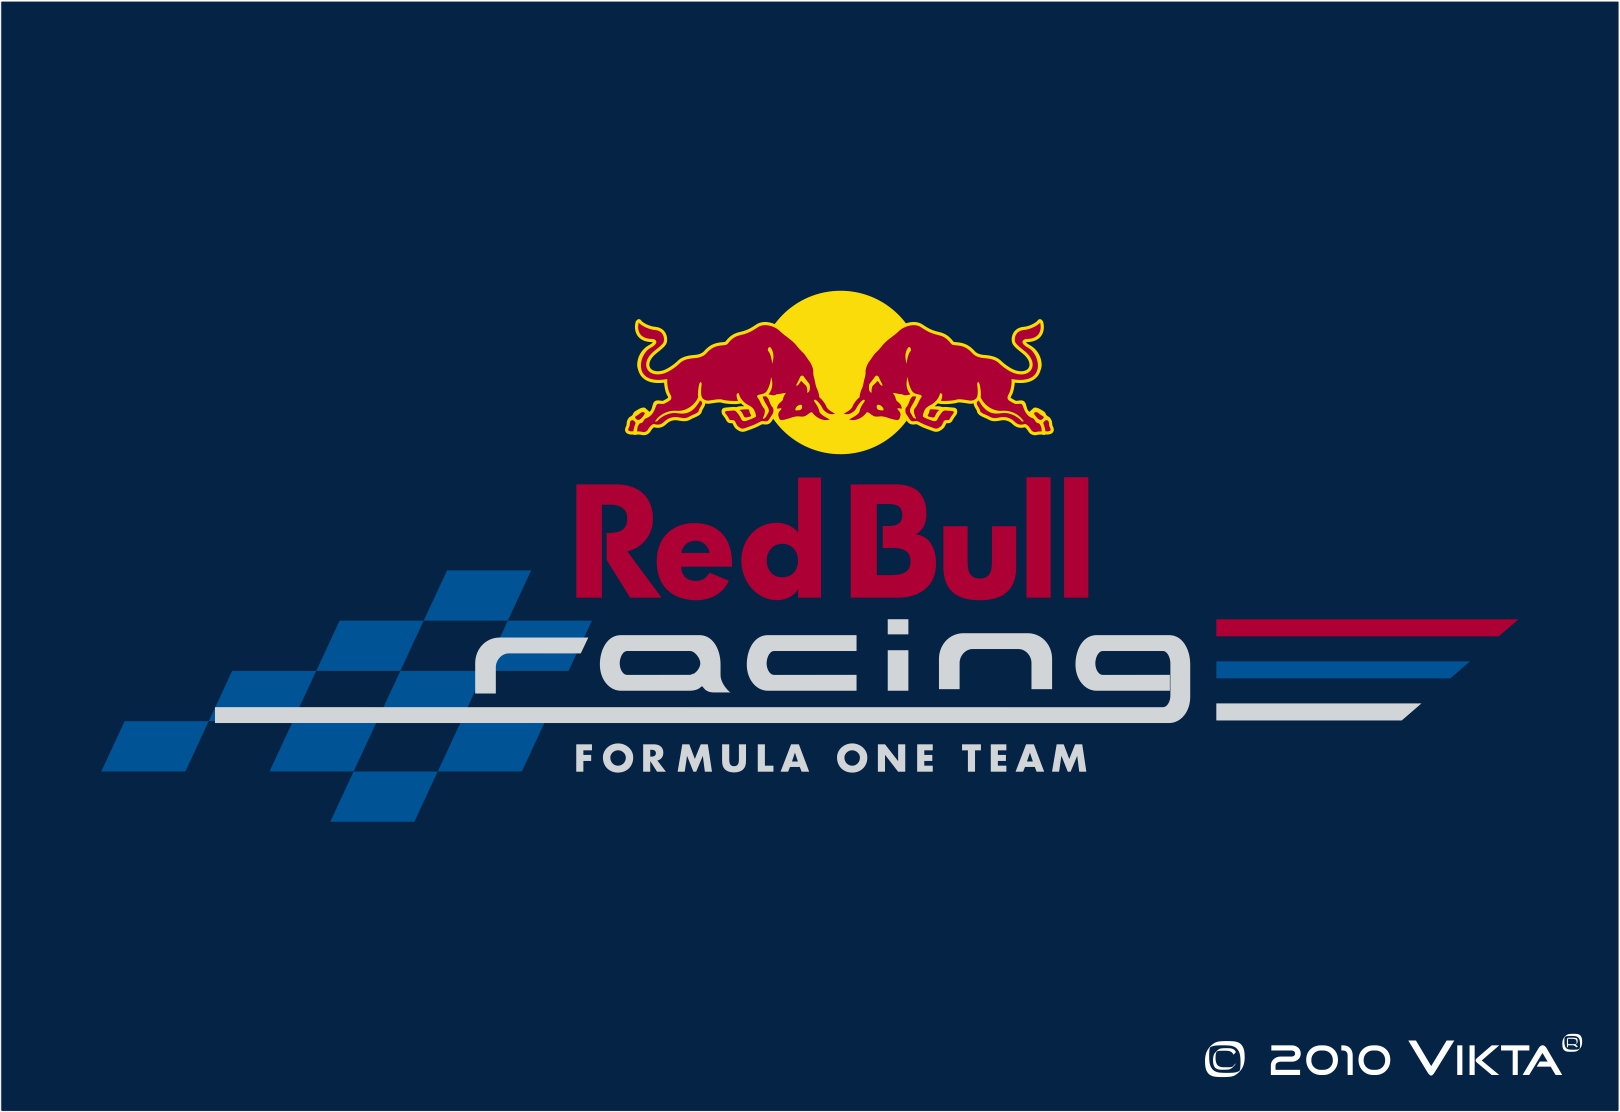 [72+] Red Bull Racing Wallpaper on WallpaperSafari